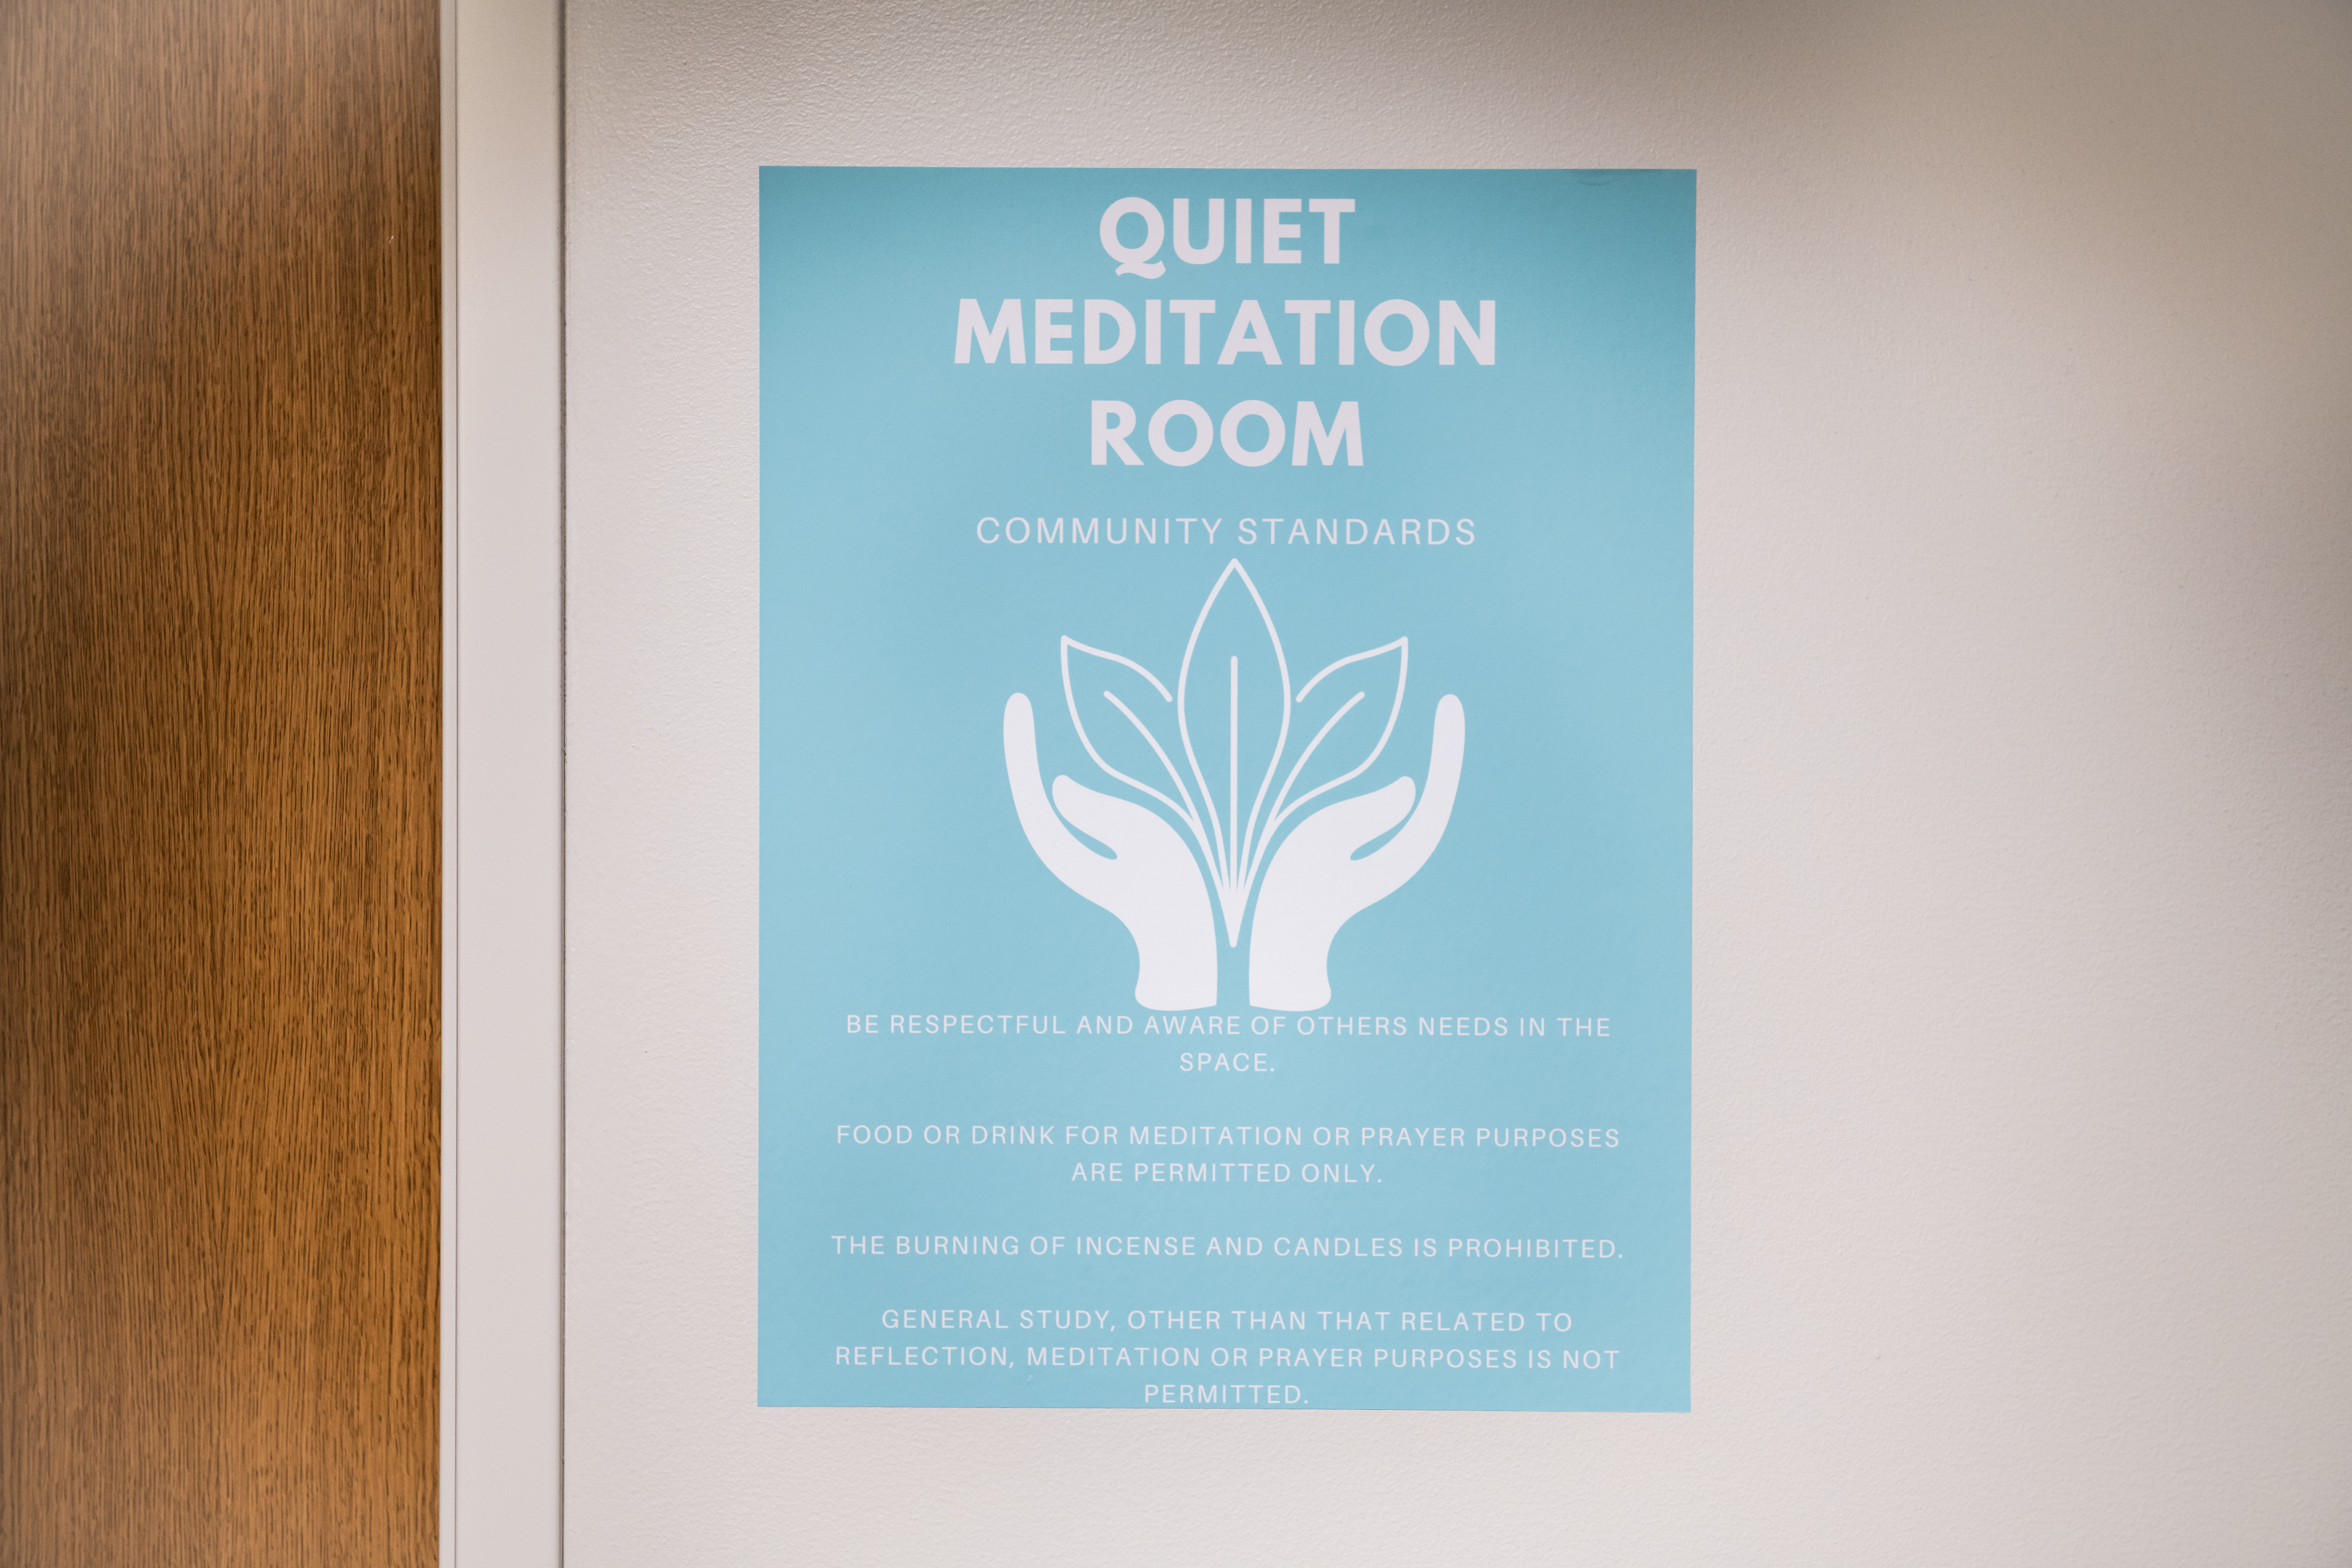 Image of Meditation Room sign